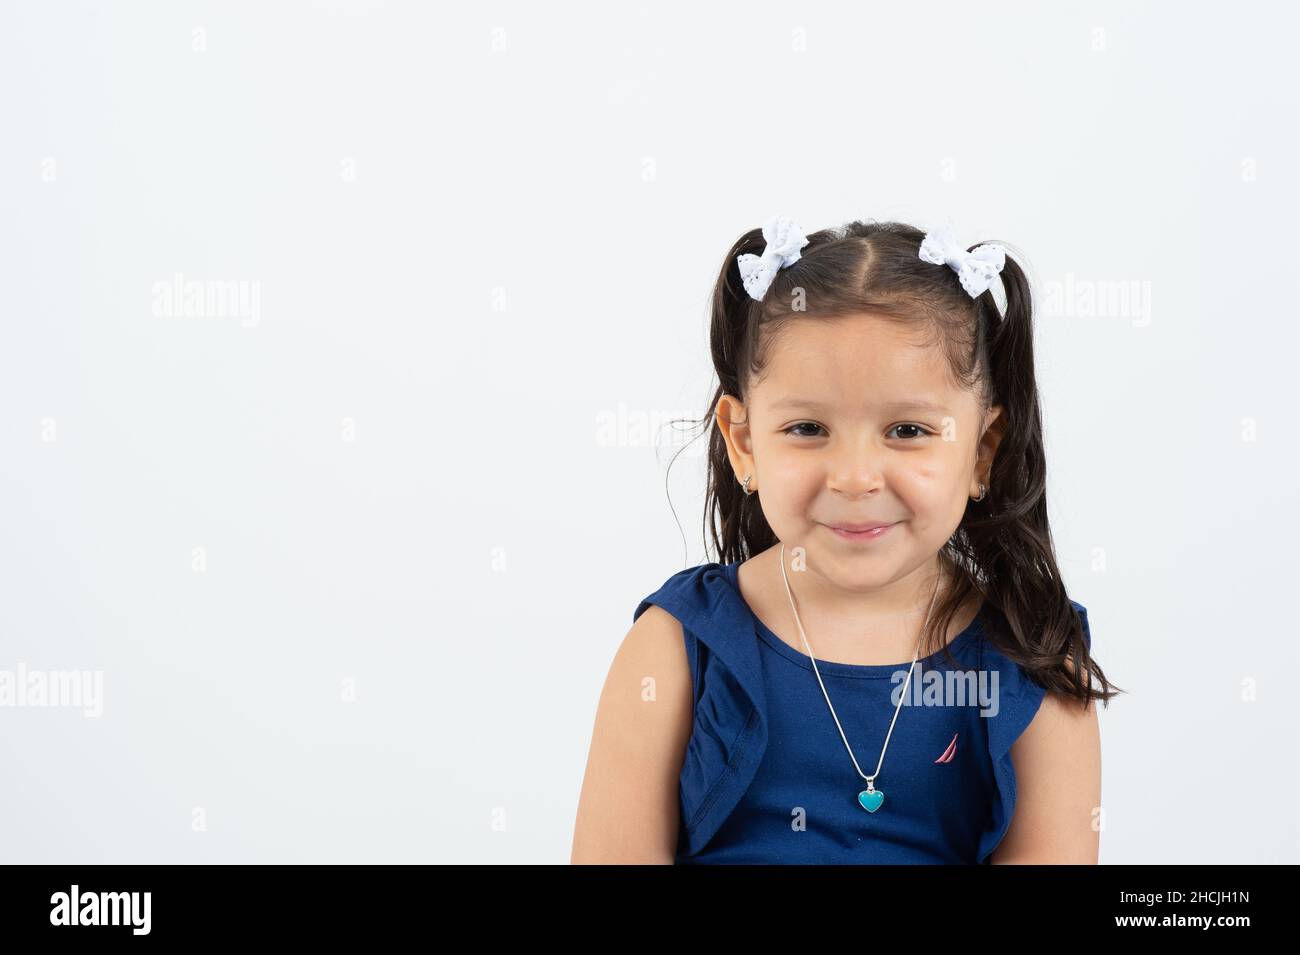 Primer plano retrato de una niña de 4 o 5 años, sonriente, fondo blanco Foto de stock